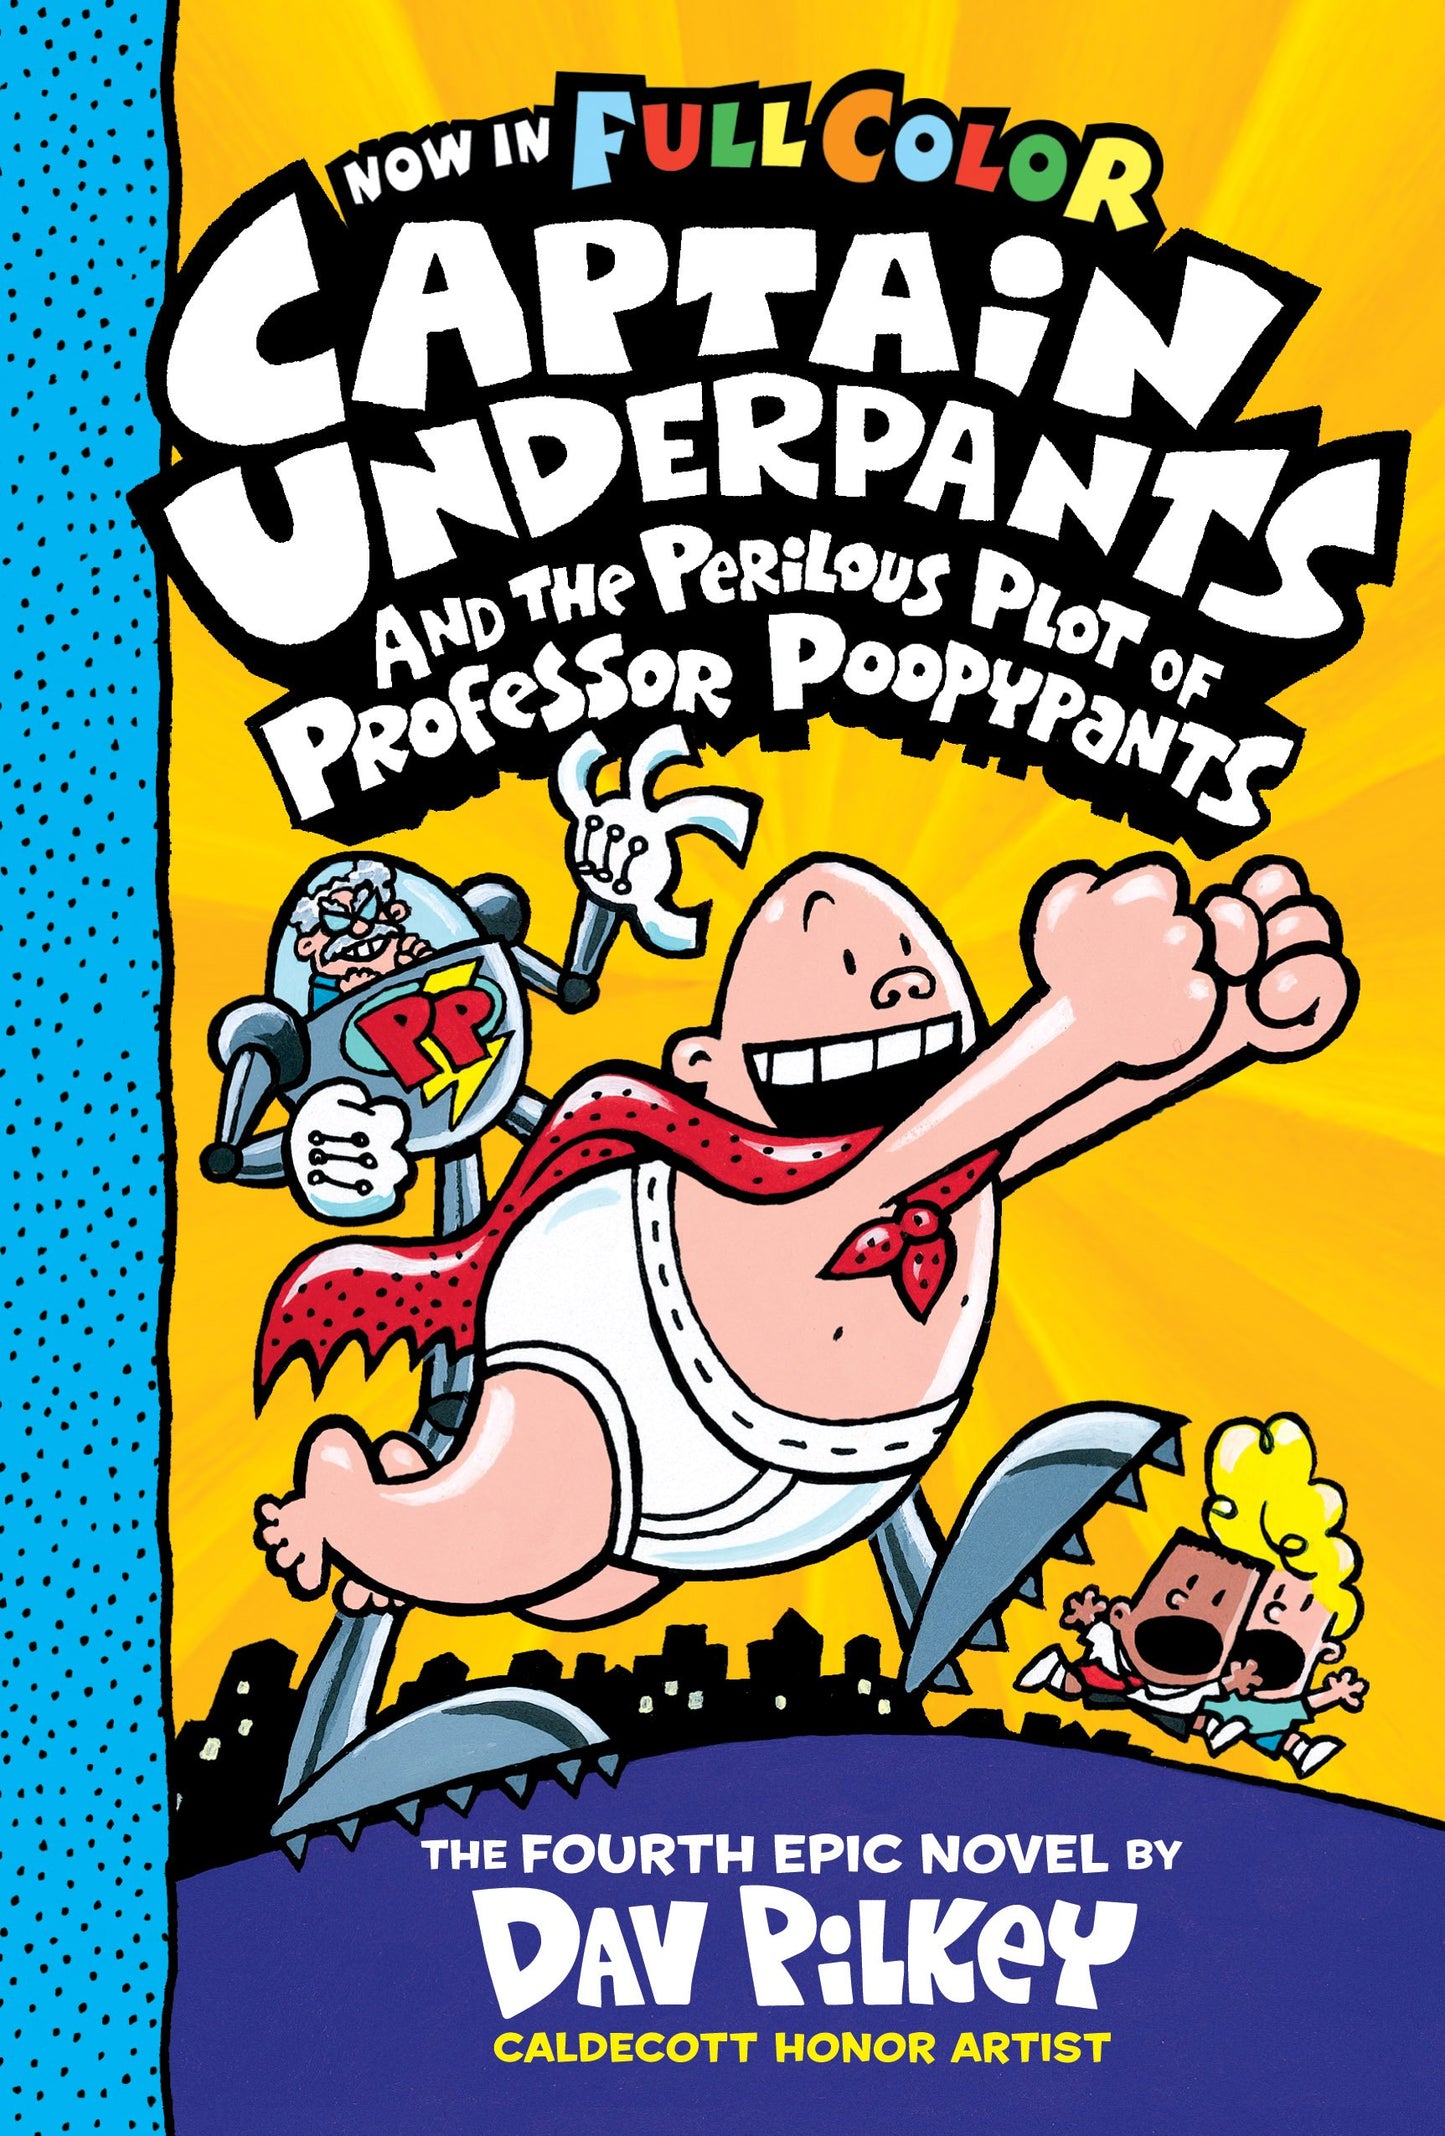 Captain Underpants Vol. 04 The Perilous Plot of Professor Poopypants (Colour Edition)